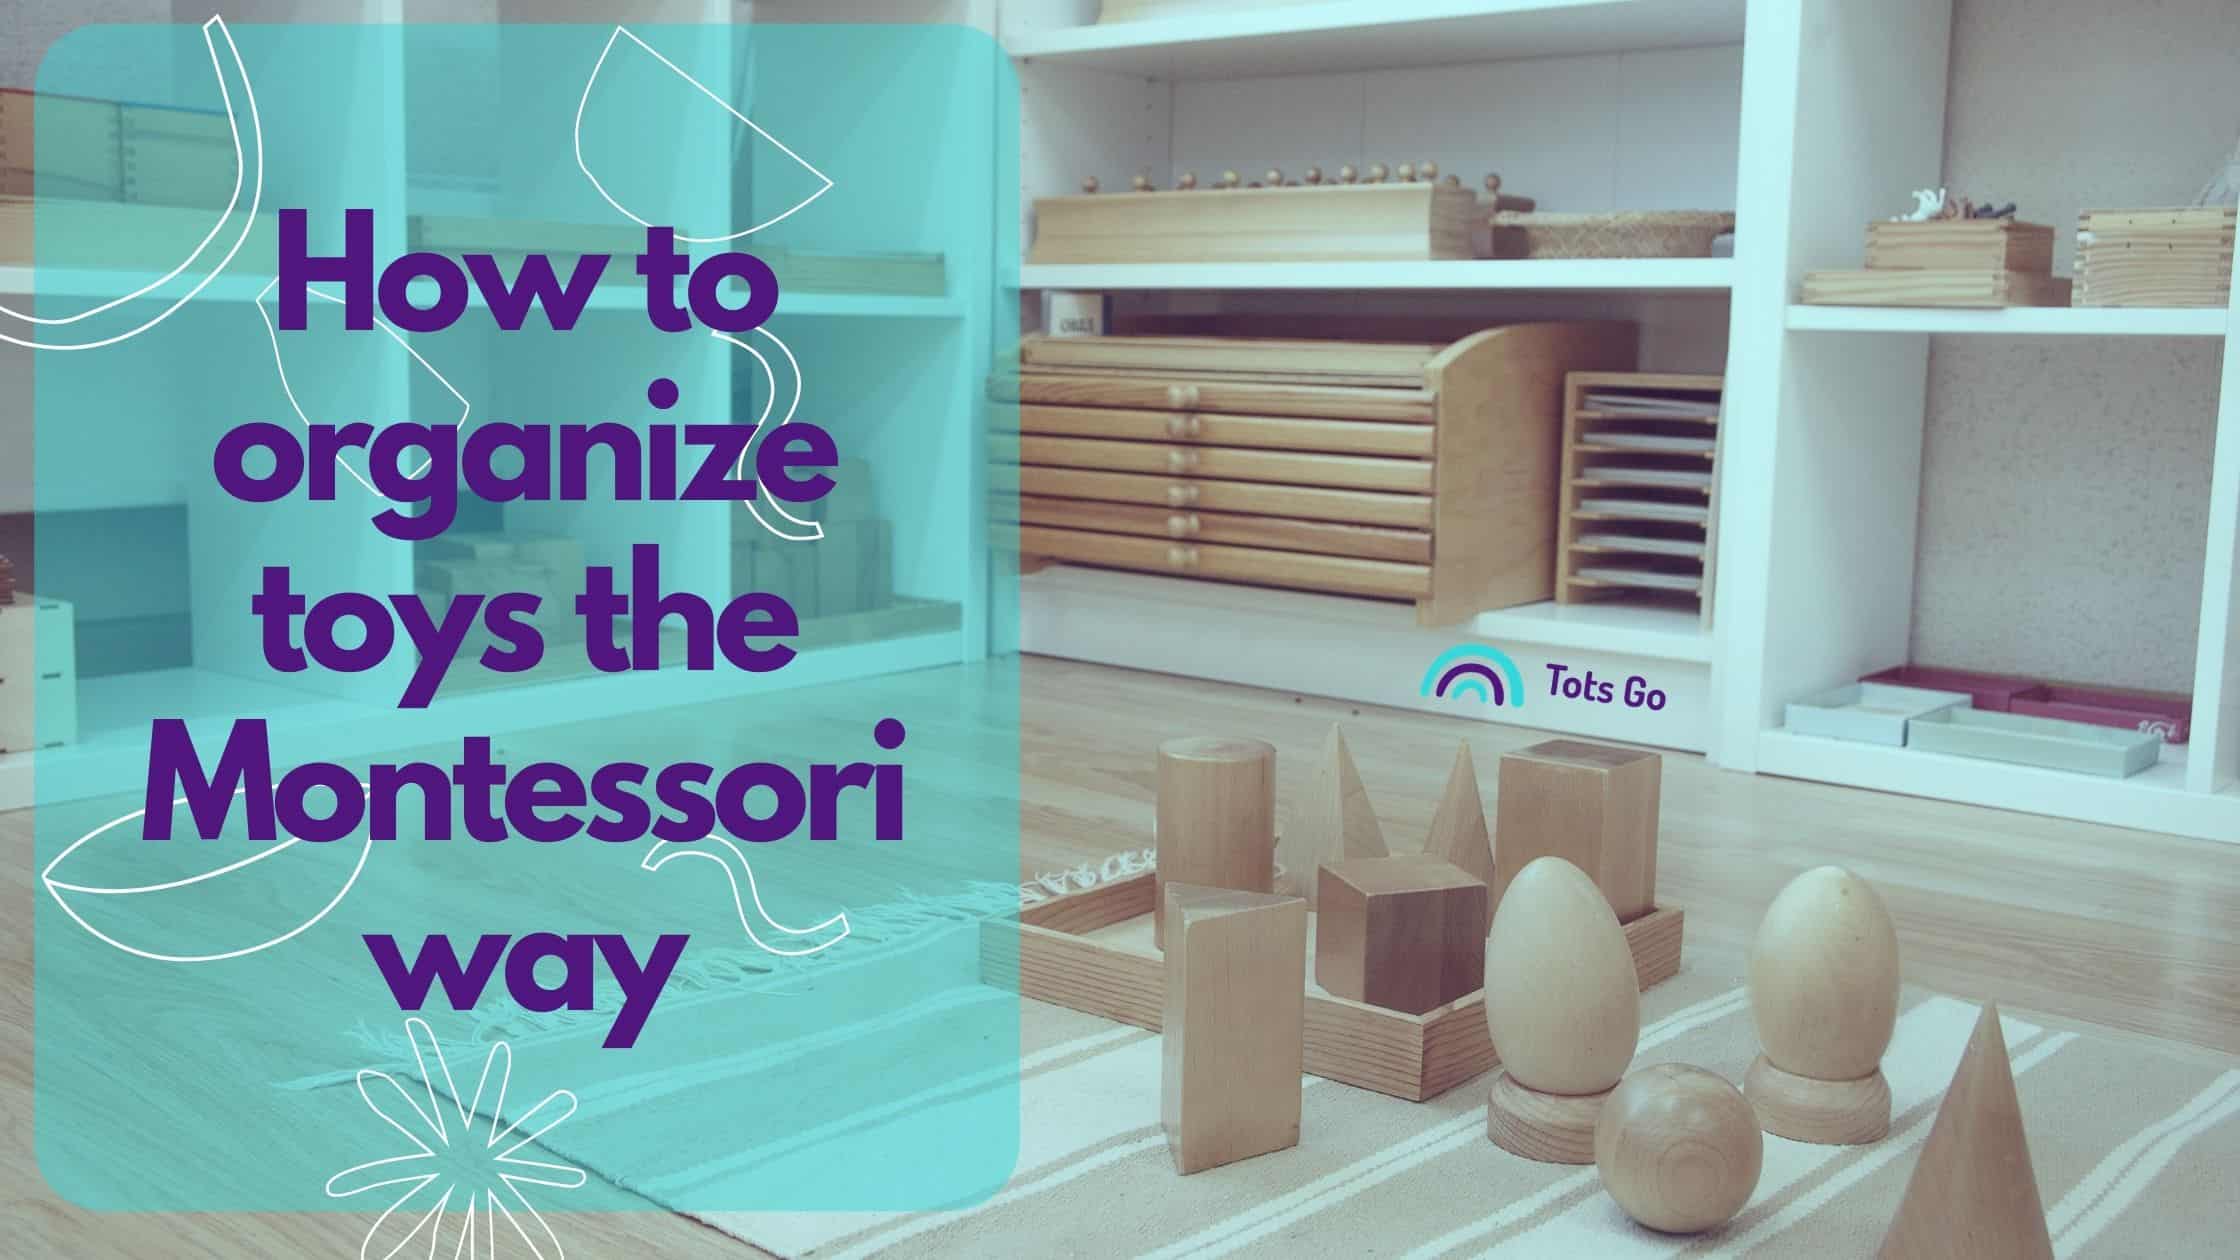 How to organize toys the Montessori way